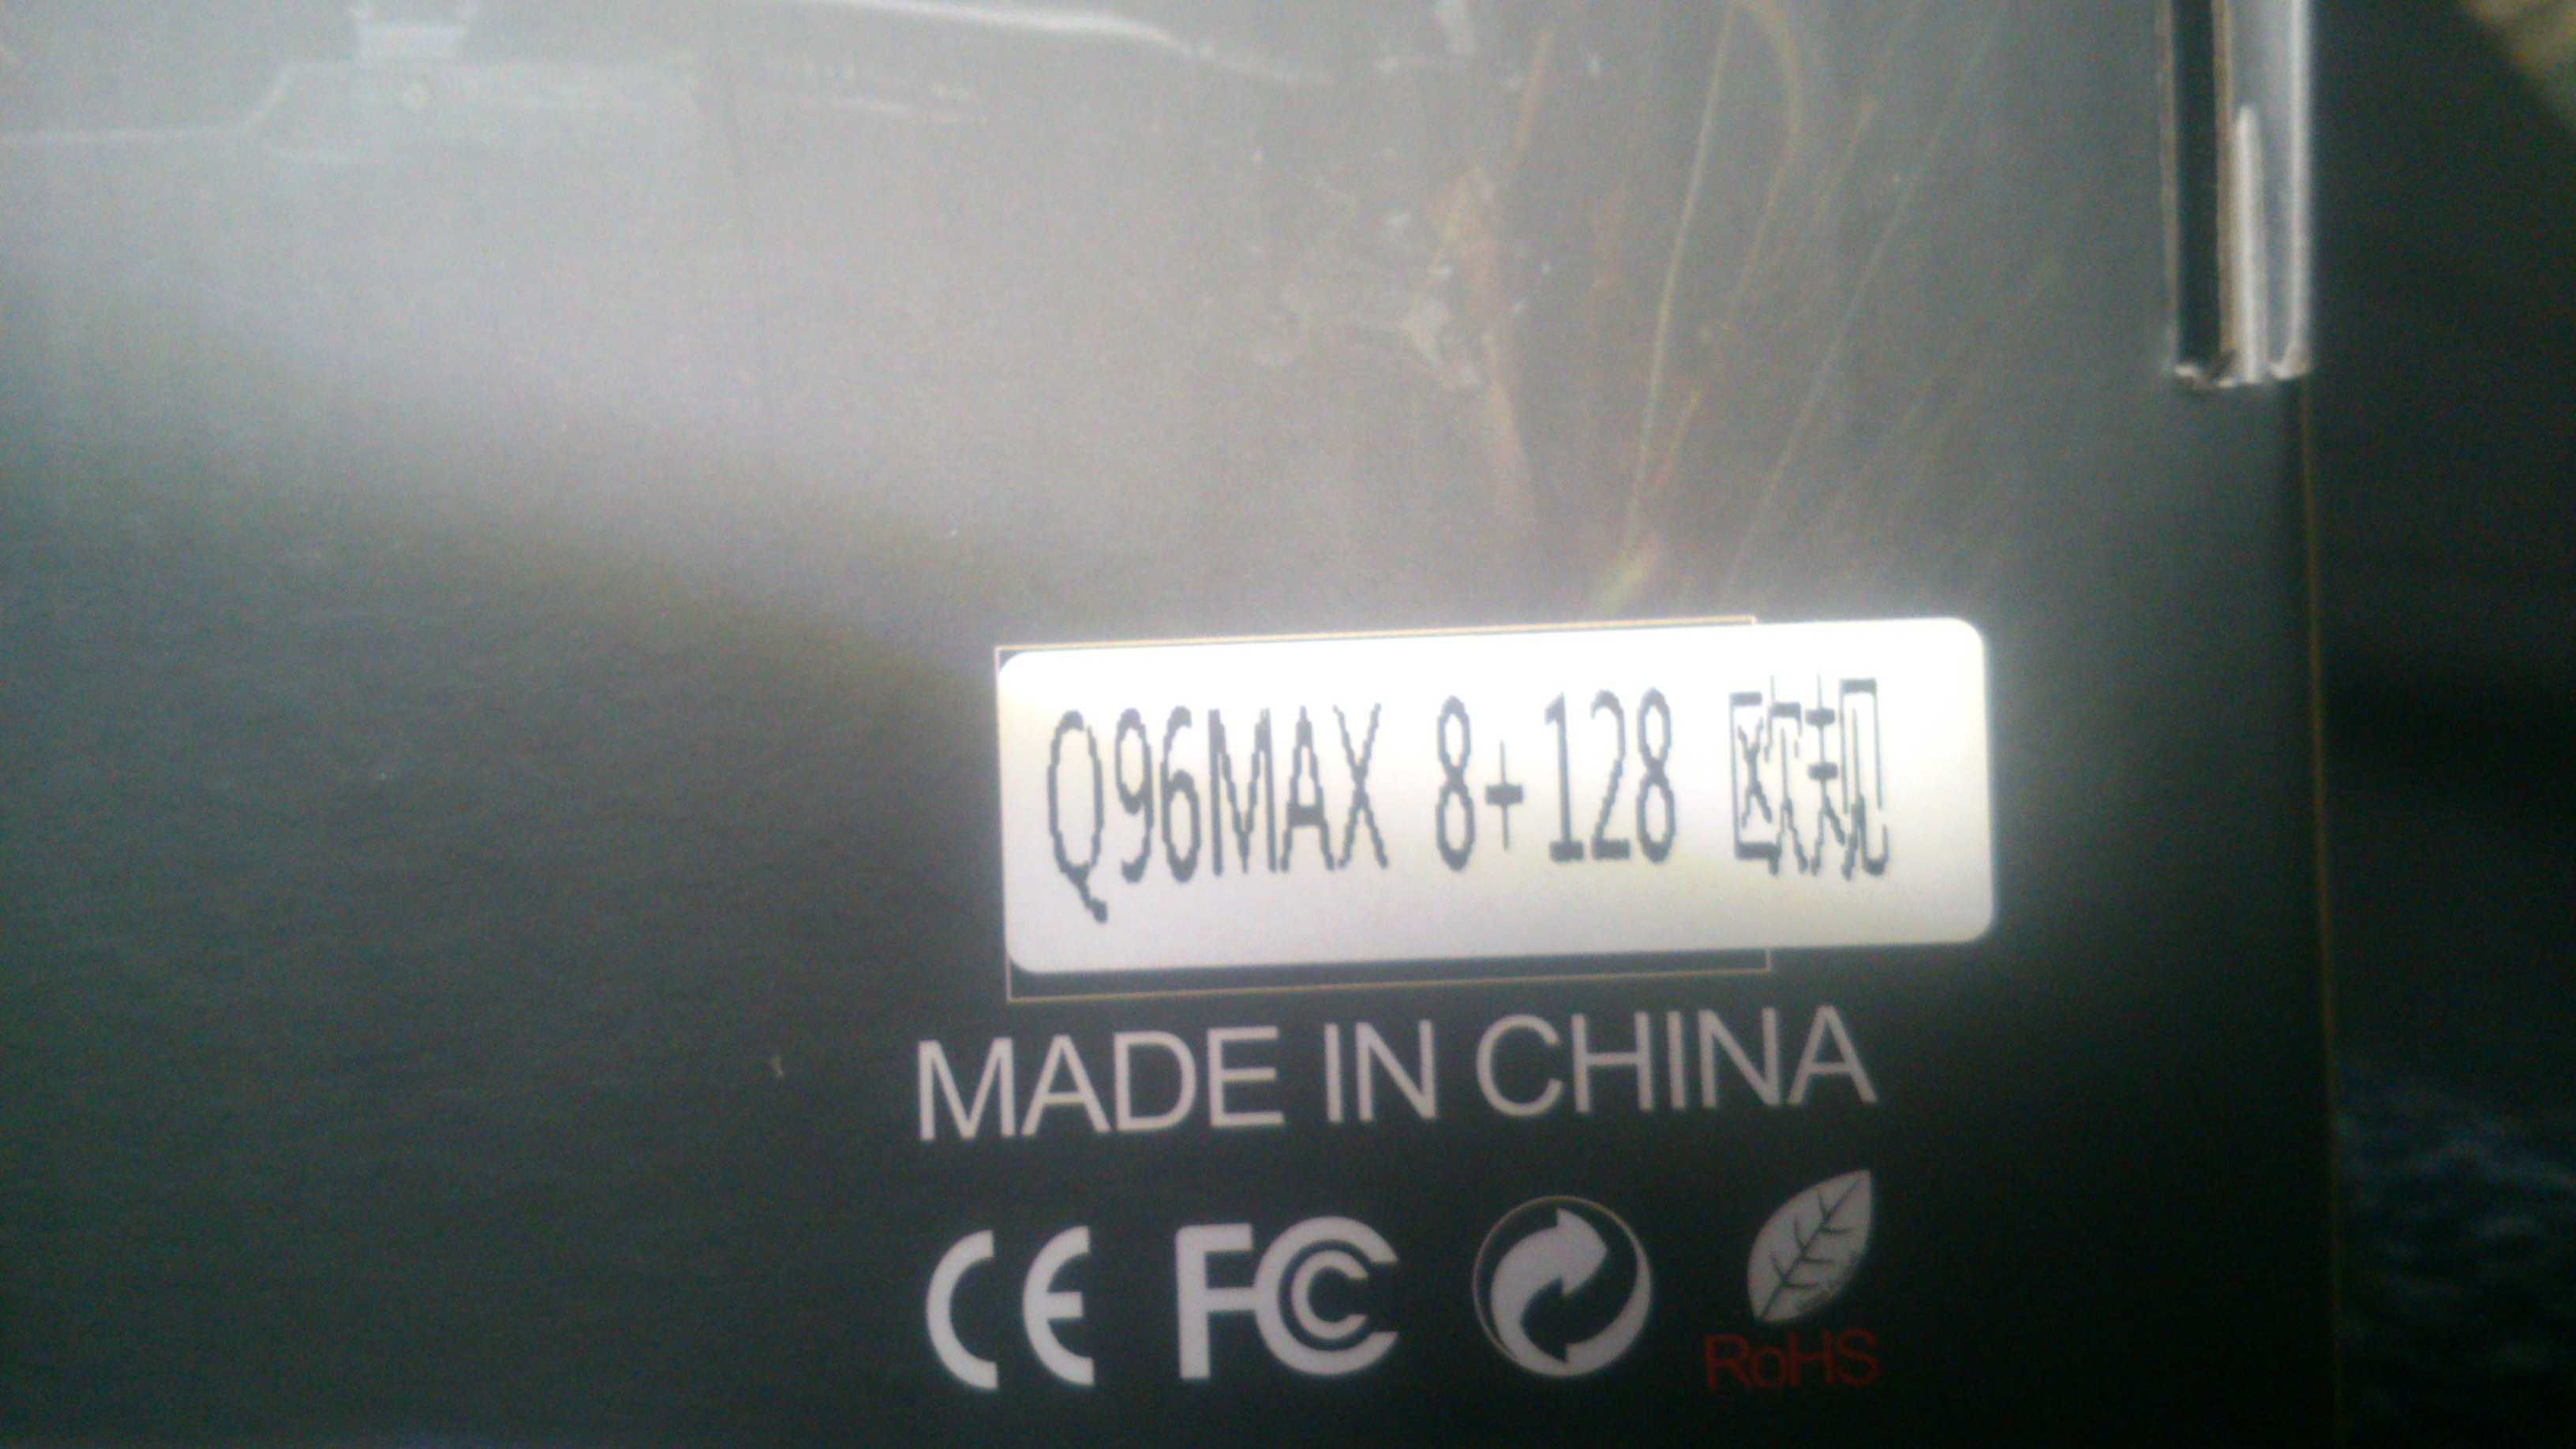 тв приставка андроид q96max 4k - 8 g 128 g